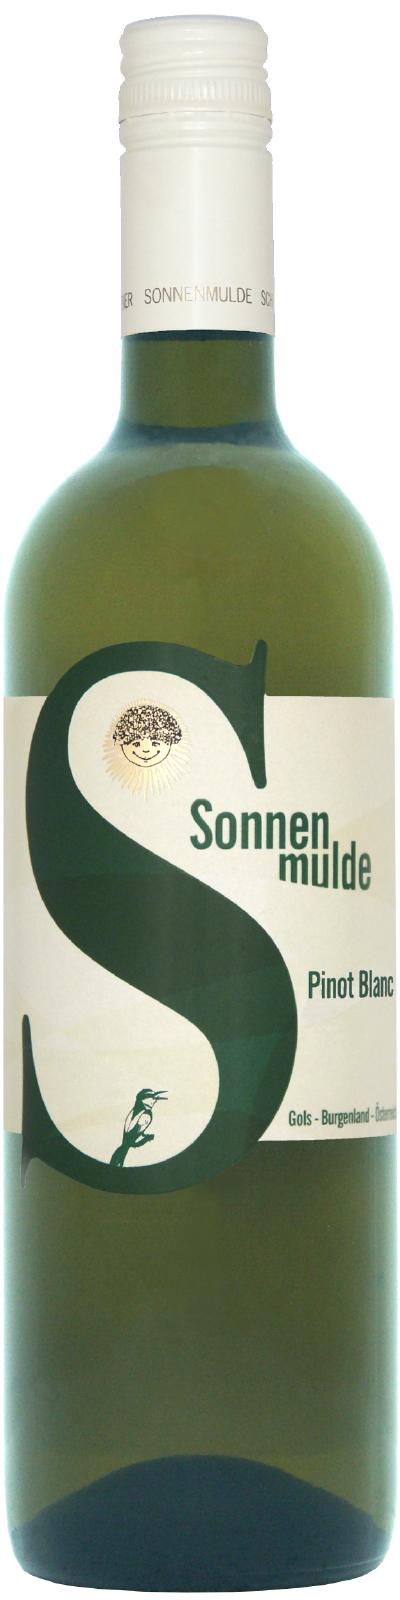 A bottle of Pinot Blanc semi-sweet